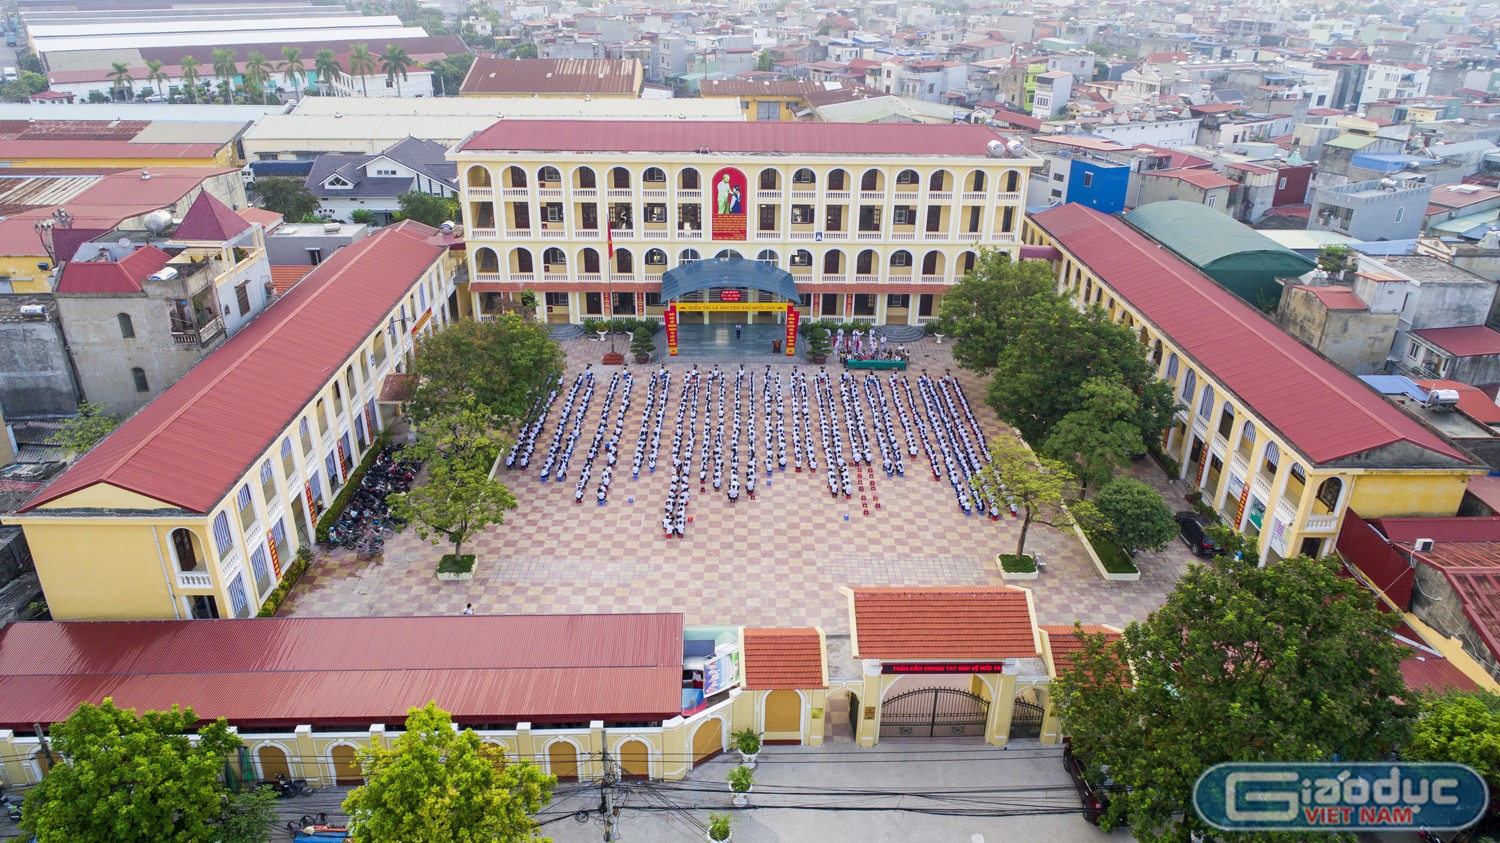 Tự hào Trường Trung học cơ sở Lạc Viên đạt chuẩn quốc gia mức độ Giáo dục Việt Nam